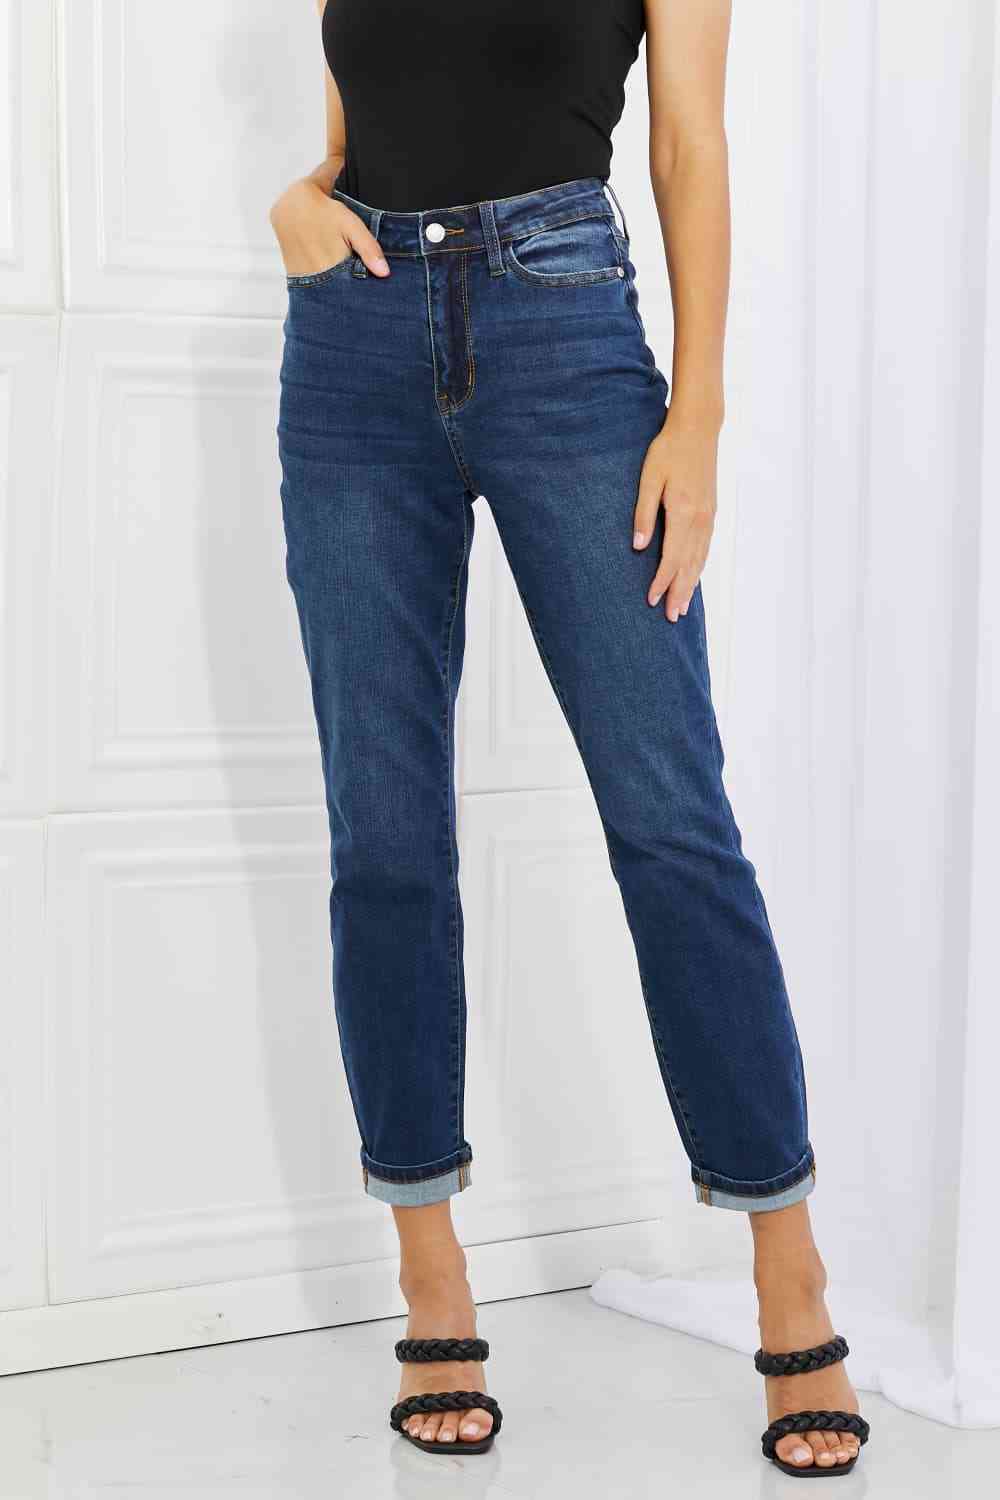 Judy Blue Crystal Full Size High Waisted Cuffed Boyfriend Jeans - U Moody